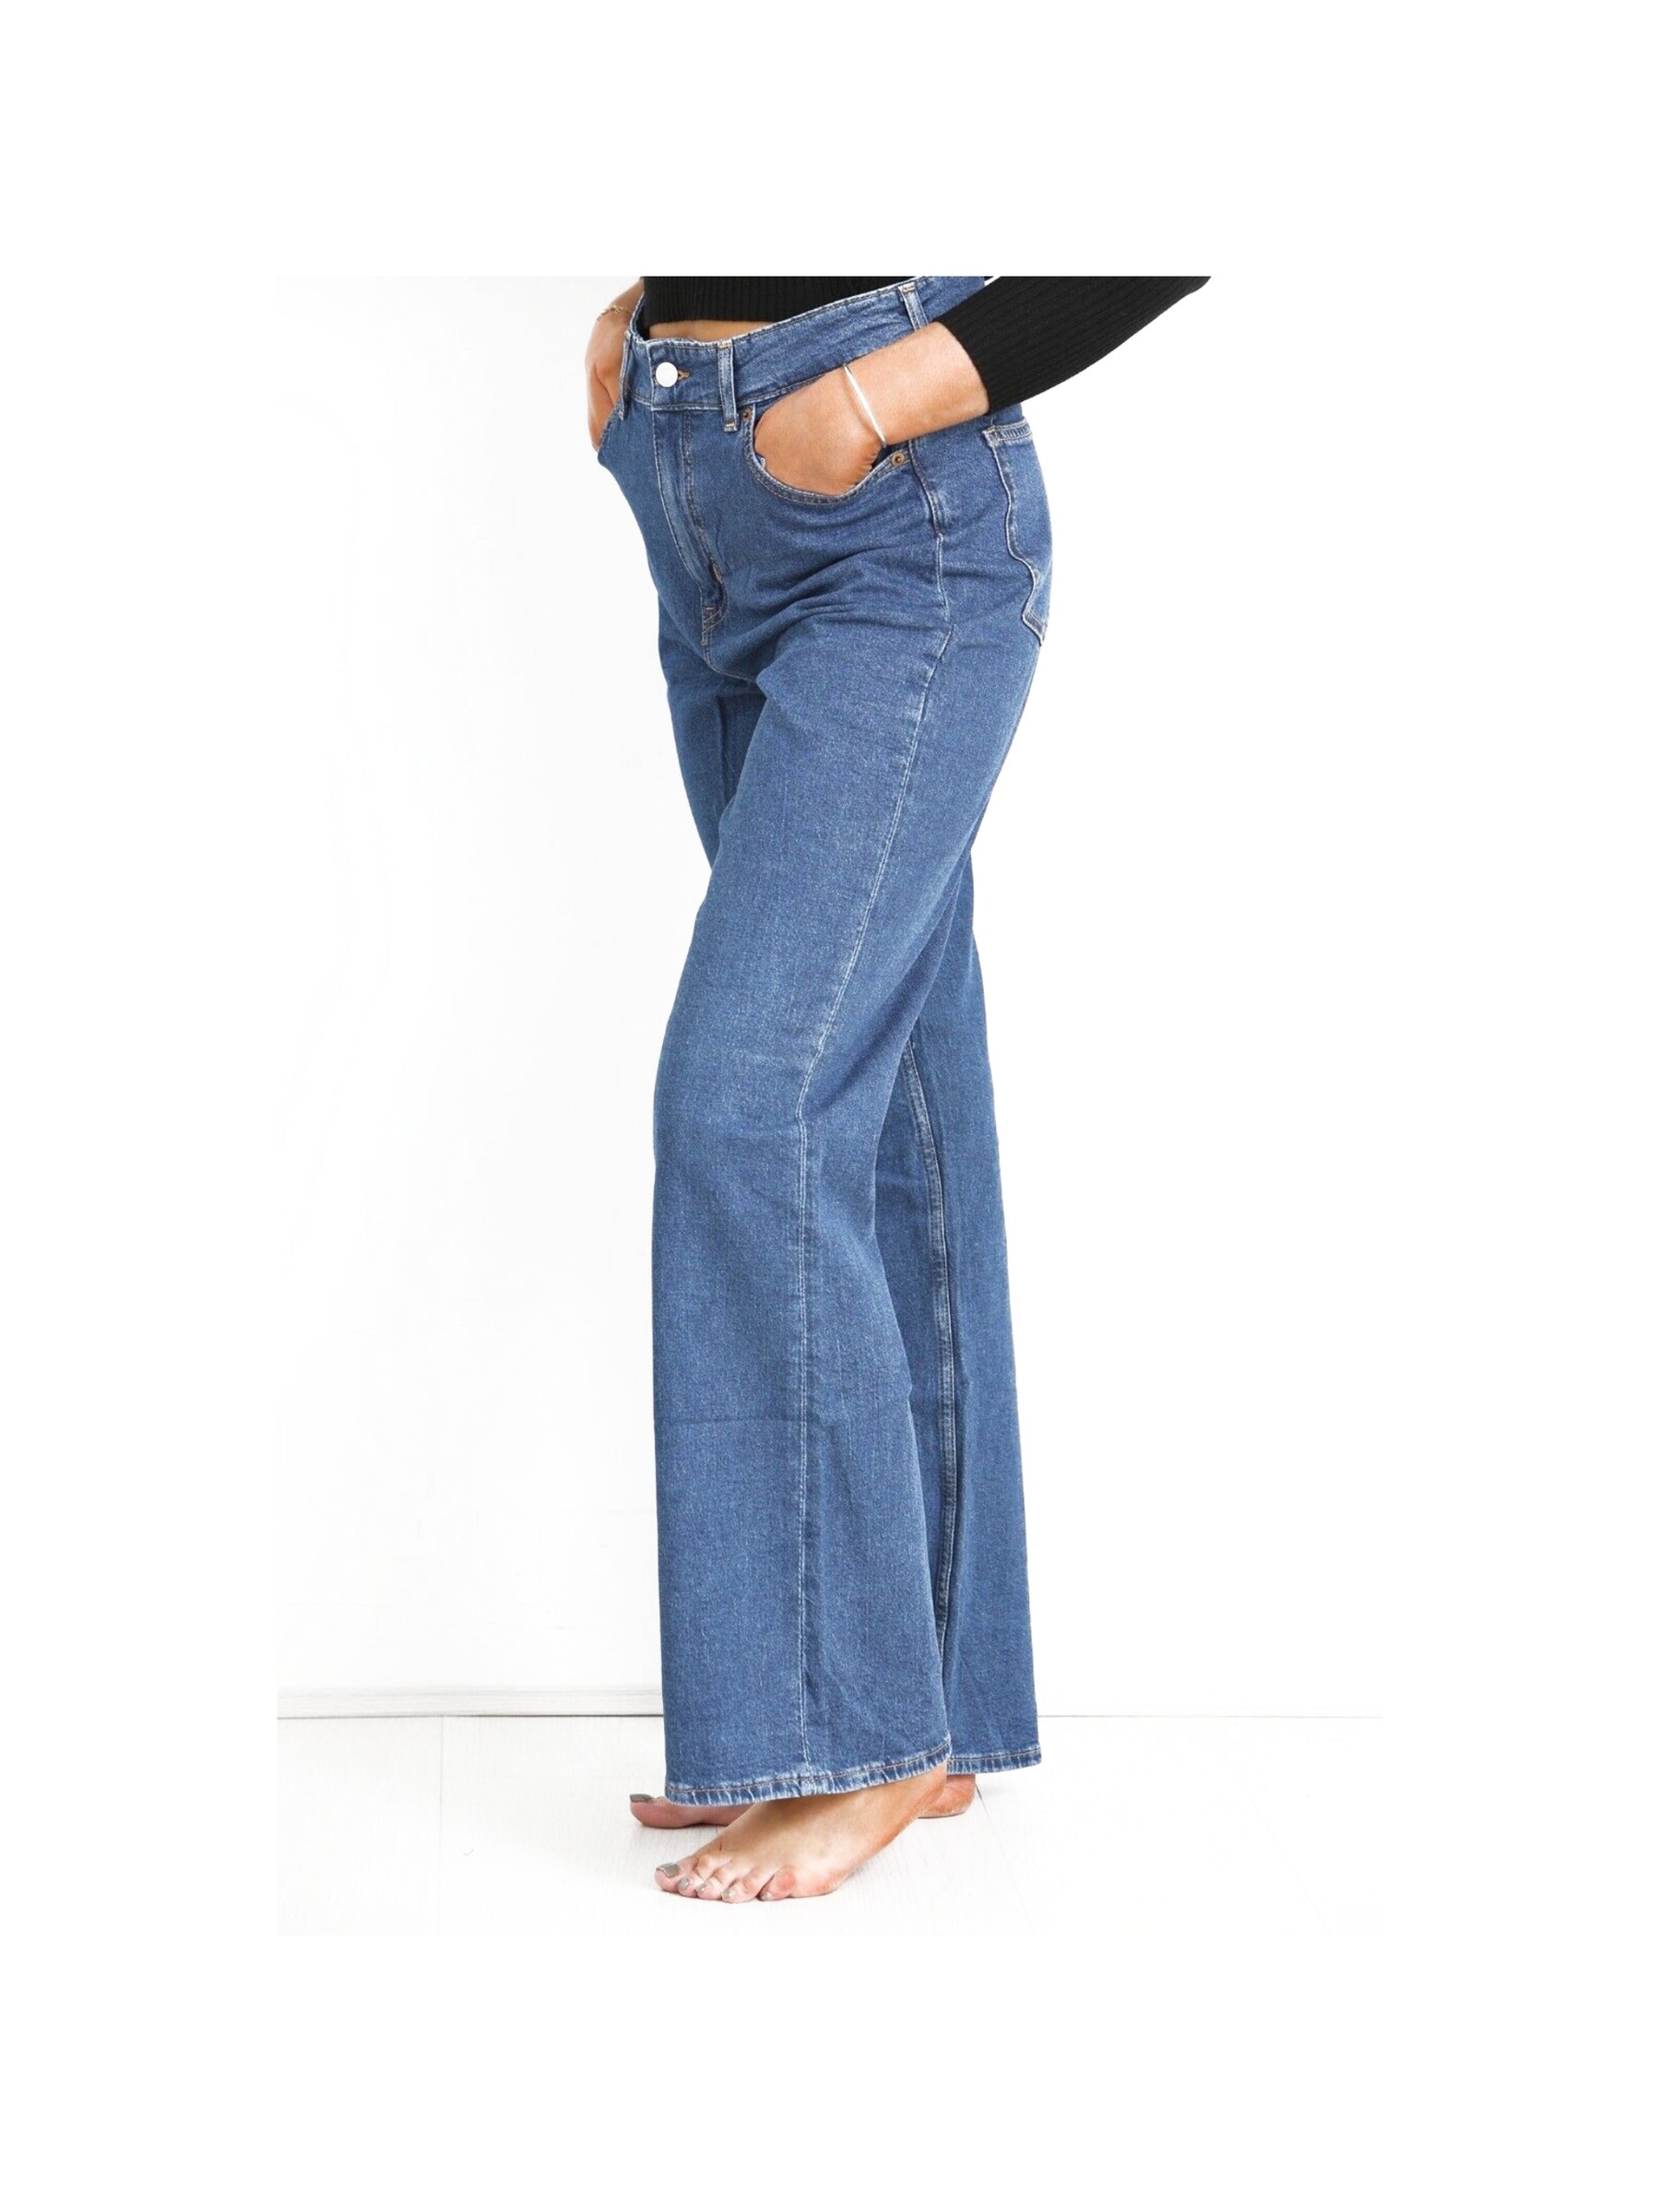 H&M_BOOTCUT_JNS EX H&M | Womens Bootcut Jeans EX H&M RAWDENIM